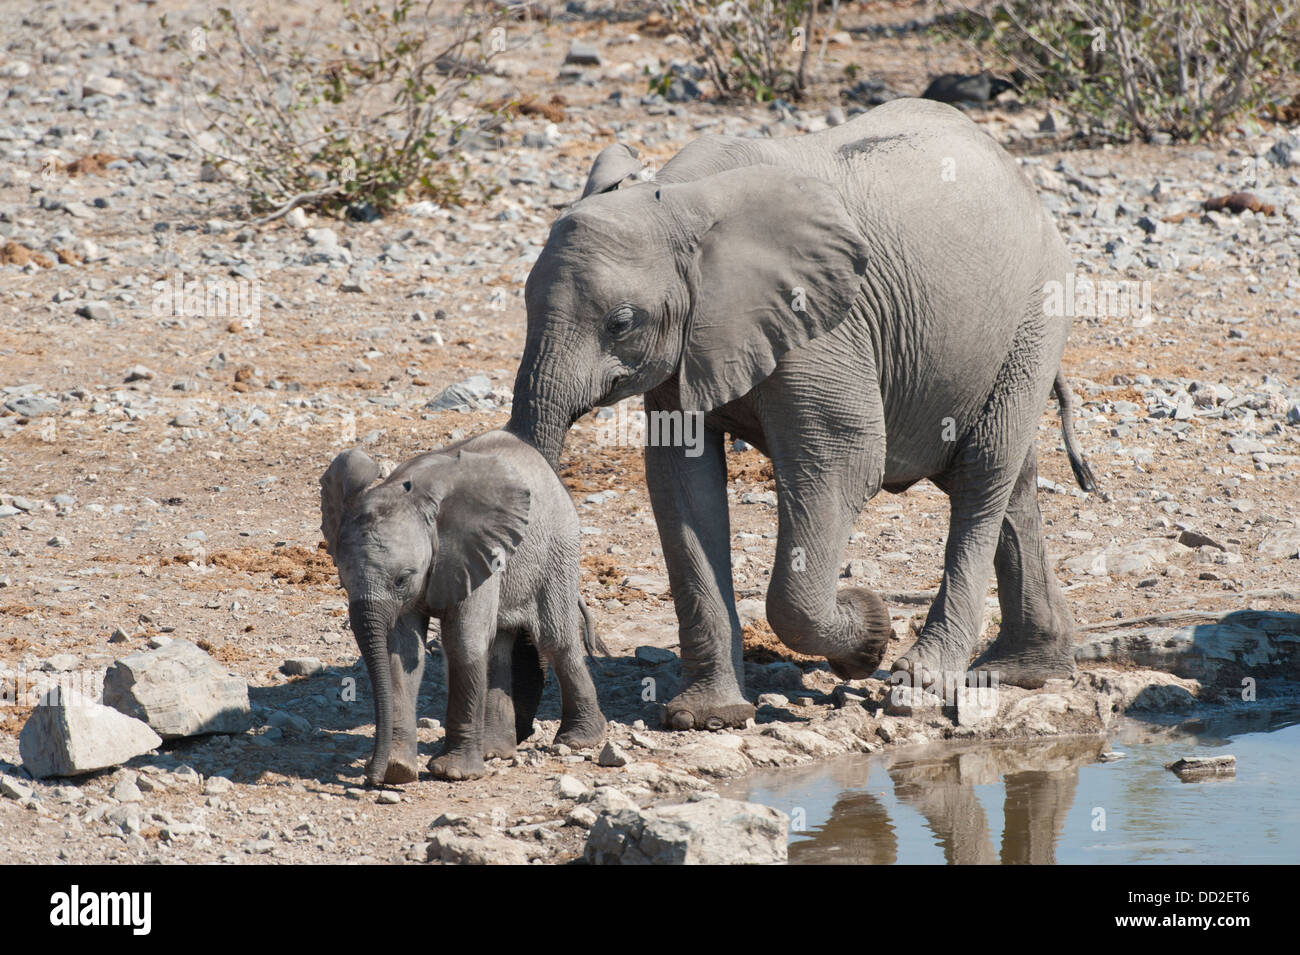 Les subadultes elephant (Loxodonta africana) suit baby elephant calf à Halali waterhole, Etosha Nationalpark, Namibie Banque D'Images